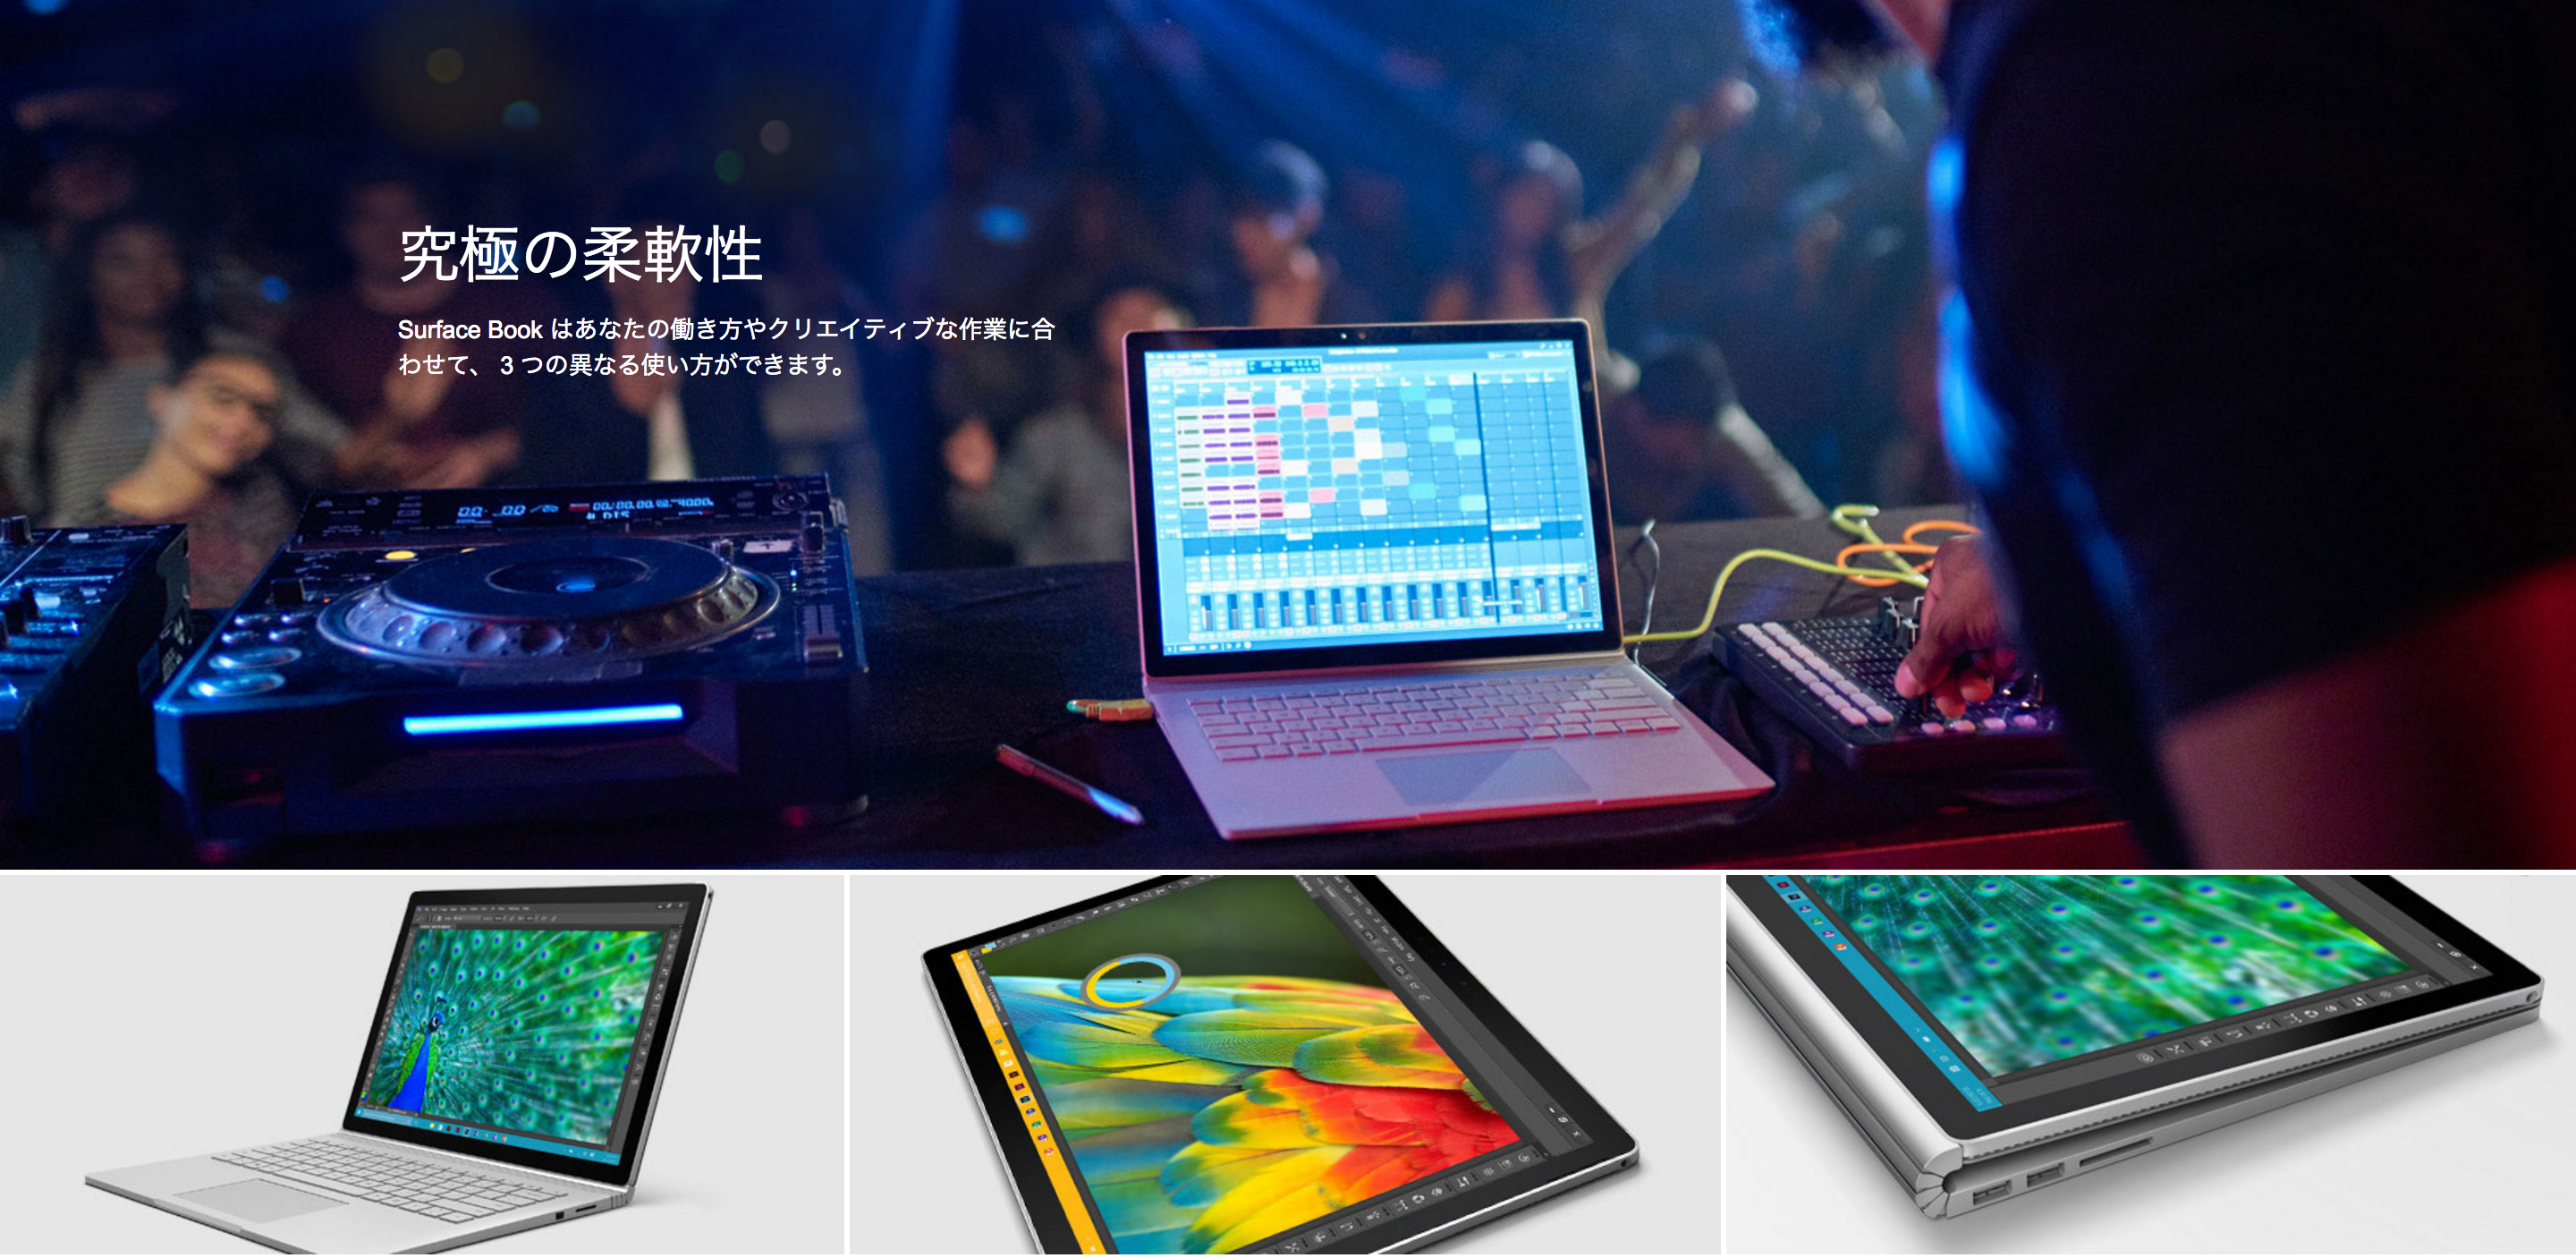 マイクロソフトが「Surface Pro 4」の価格改定、「Surface Book」キャッシュバックキャンペーンを発表